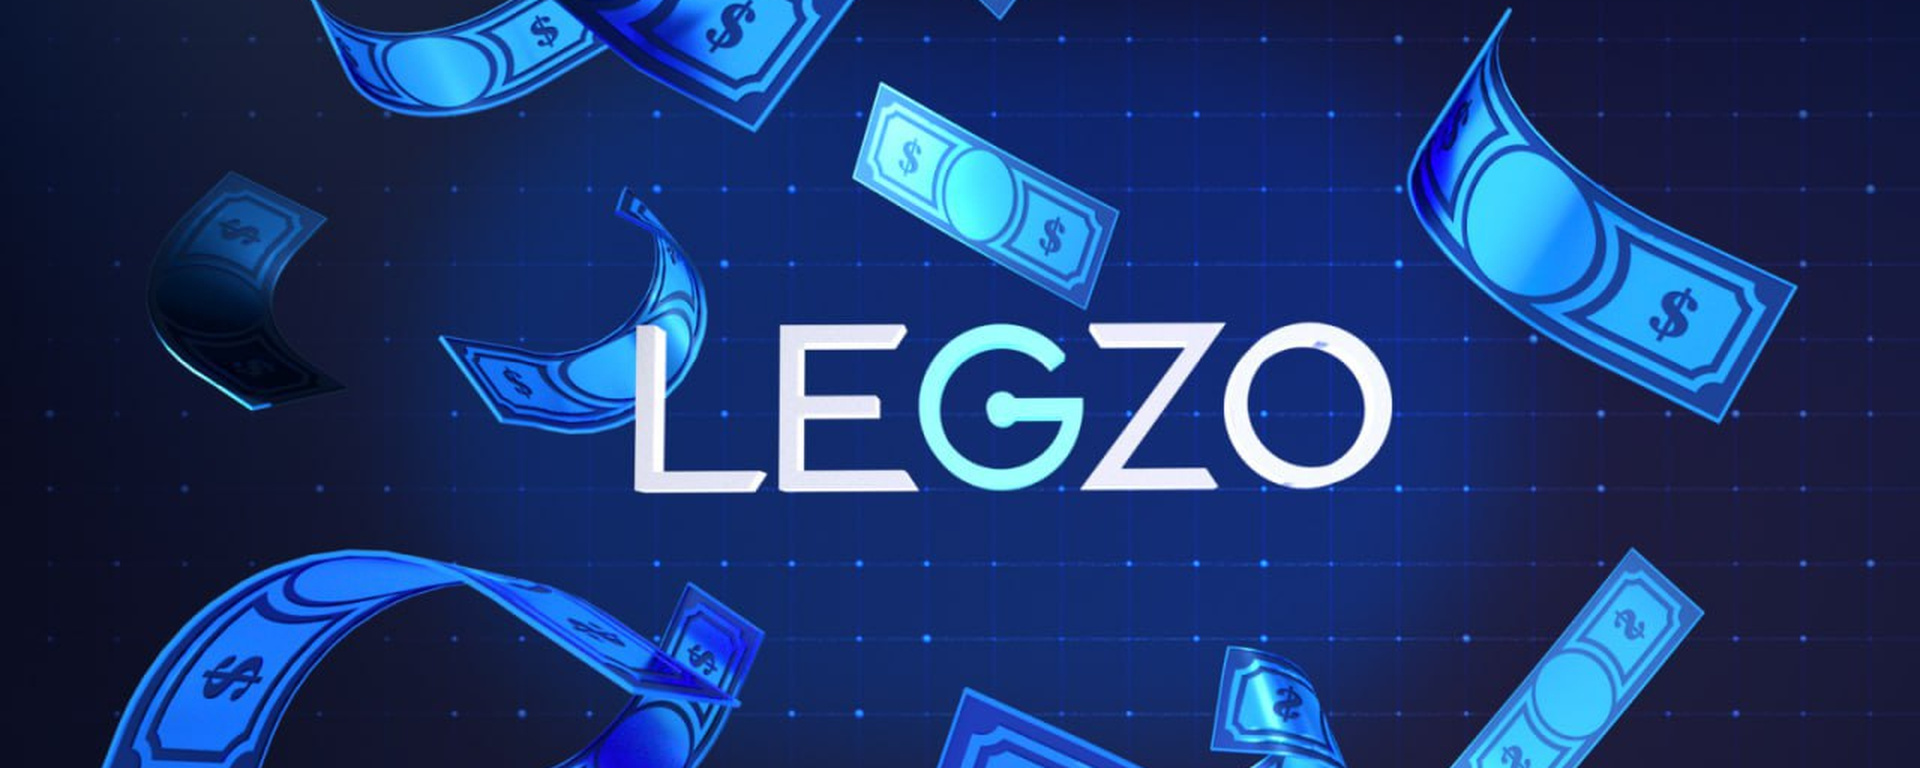 Казино Legzo: достоинства, особенности и преимущества виртуальной игровой площадки